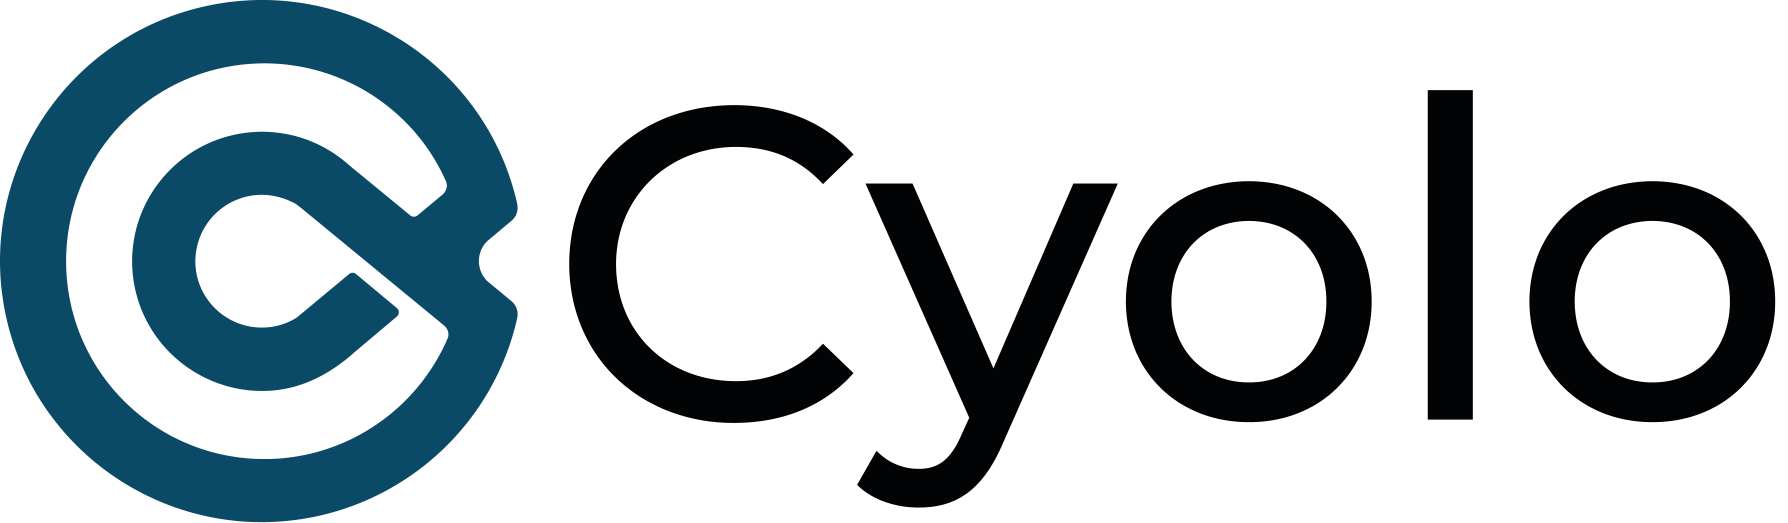 Cyolo-logo